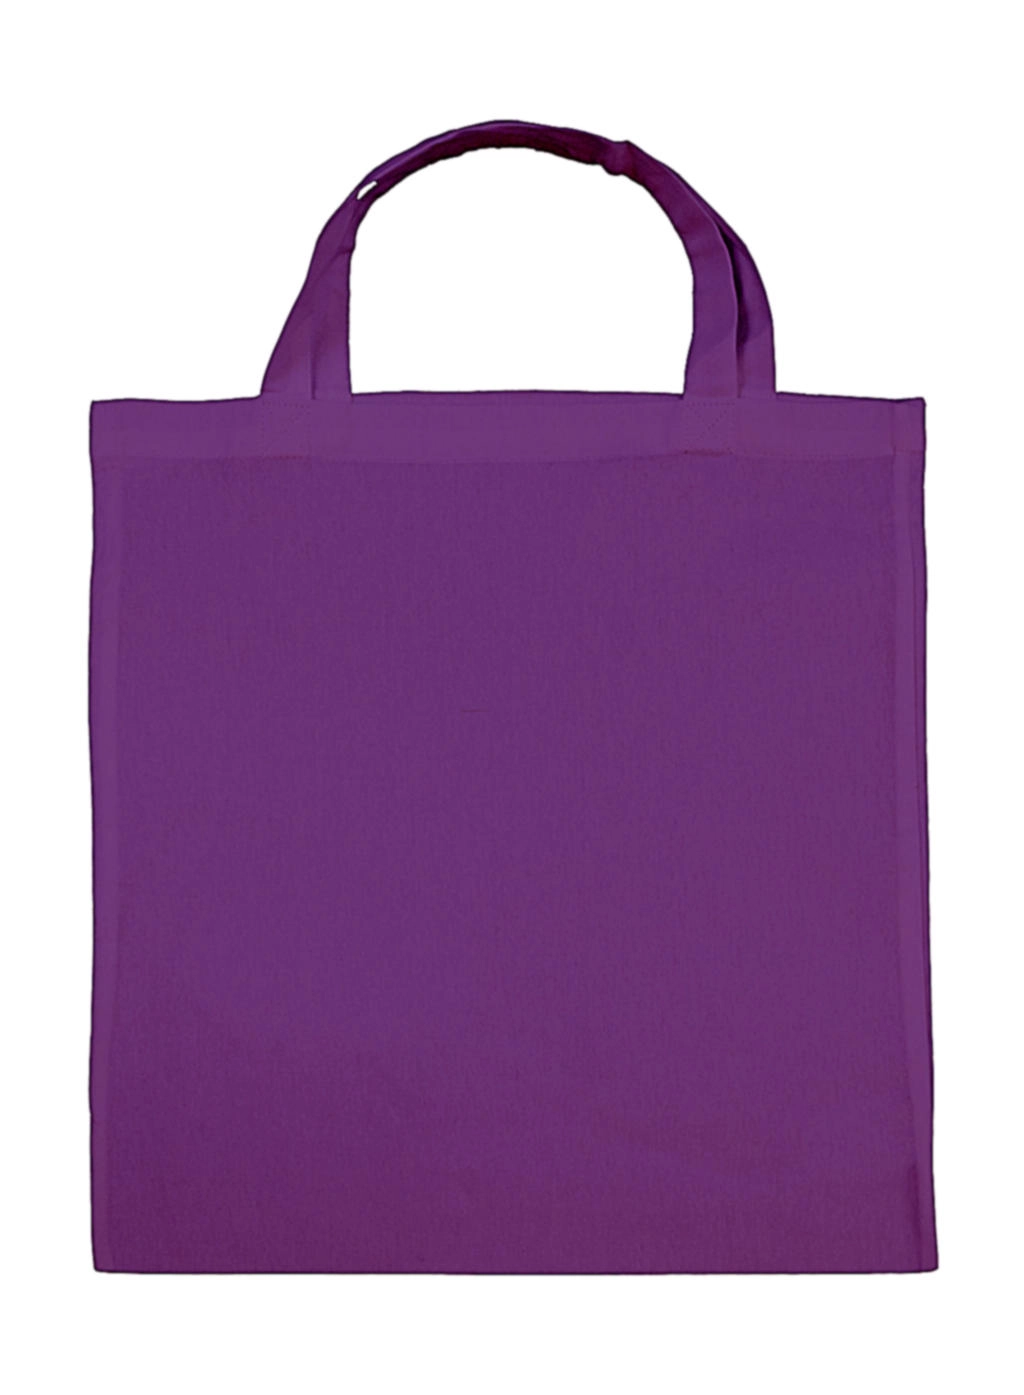 Cotton Shopper SH zum Besticken und Bedrucken in der Farbe Lilac mit Ihren Logo, Schriftzug oder Motiv.